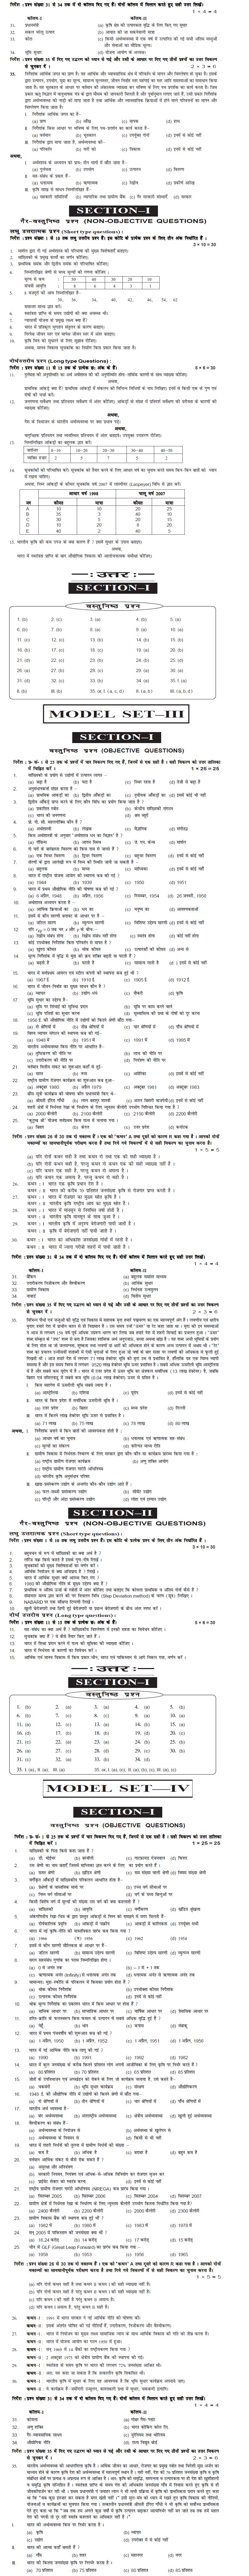 Bihar Board Class XI Arts Model Question Papers - Economics